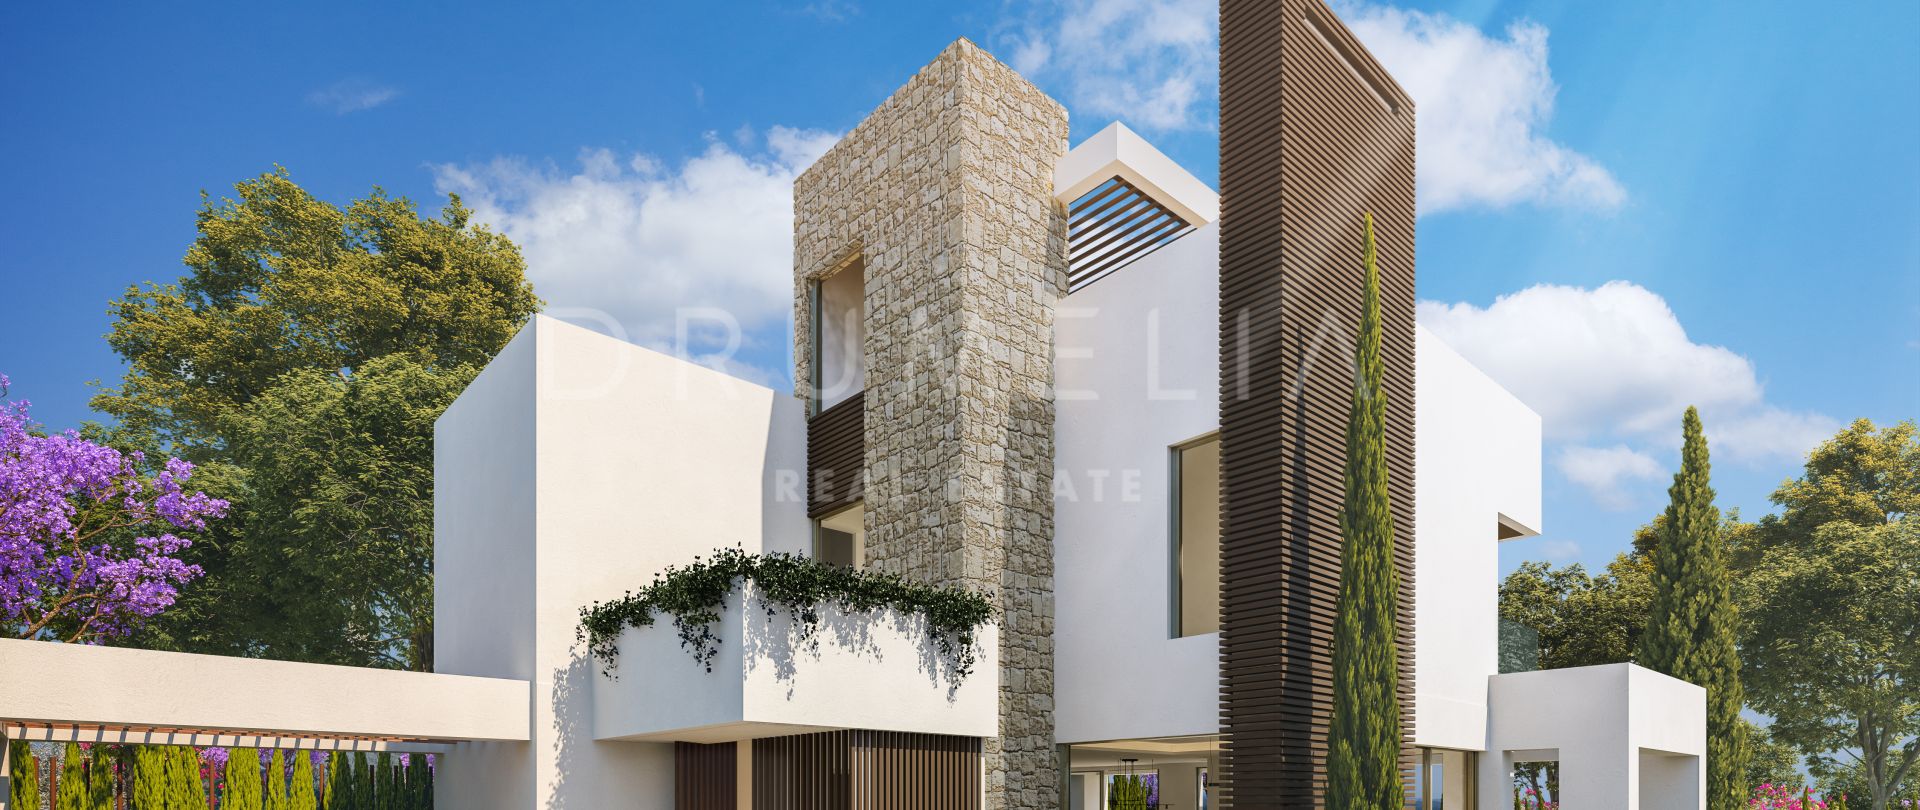 Exclusiva villa de diseño de lujo, nueva y moderna, Milla de Oro de Marbella